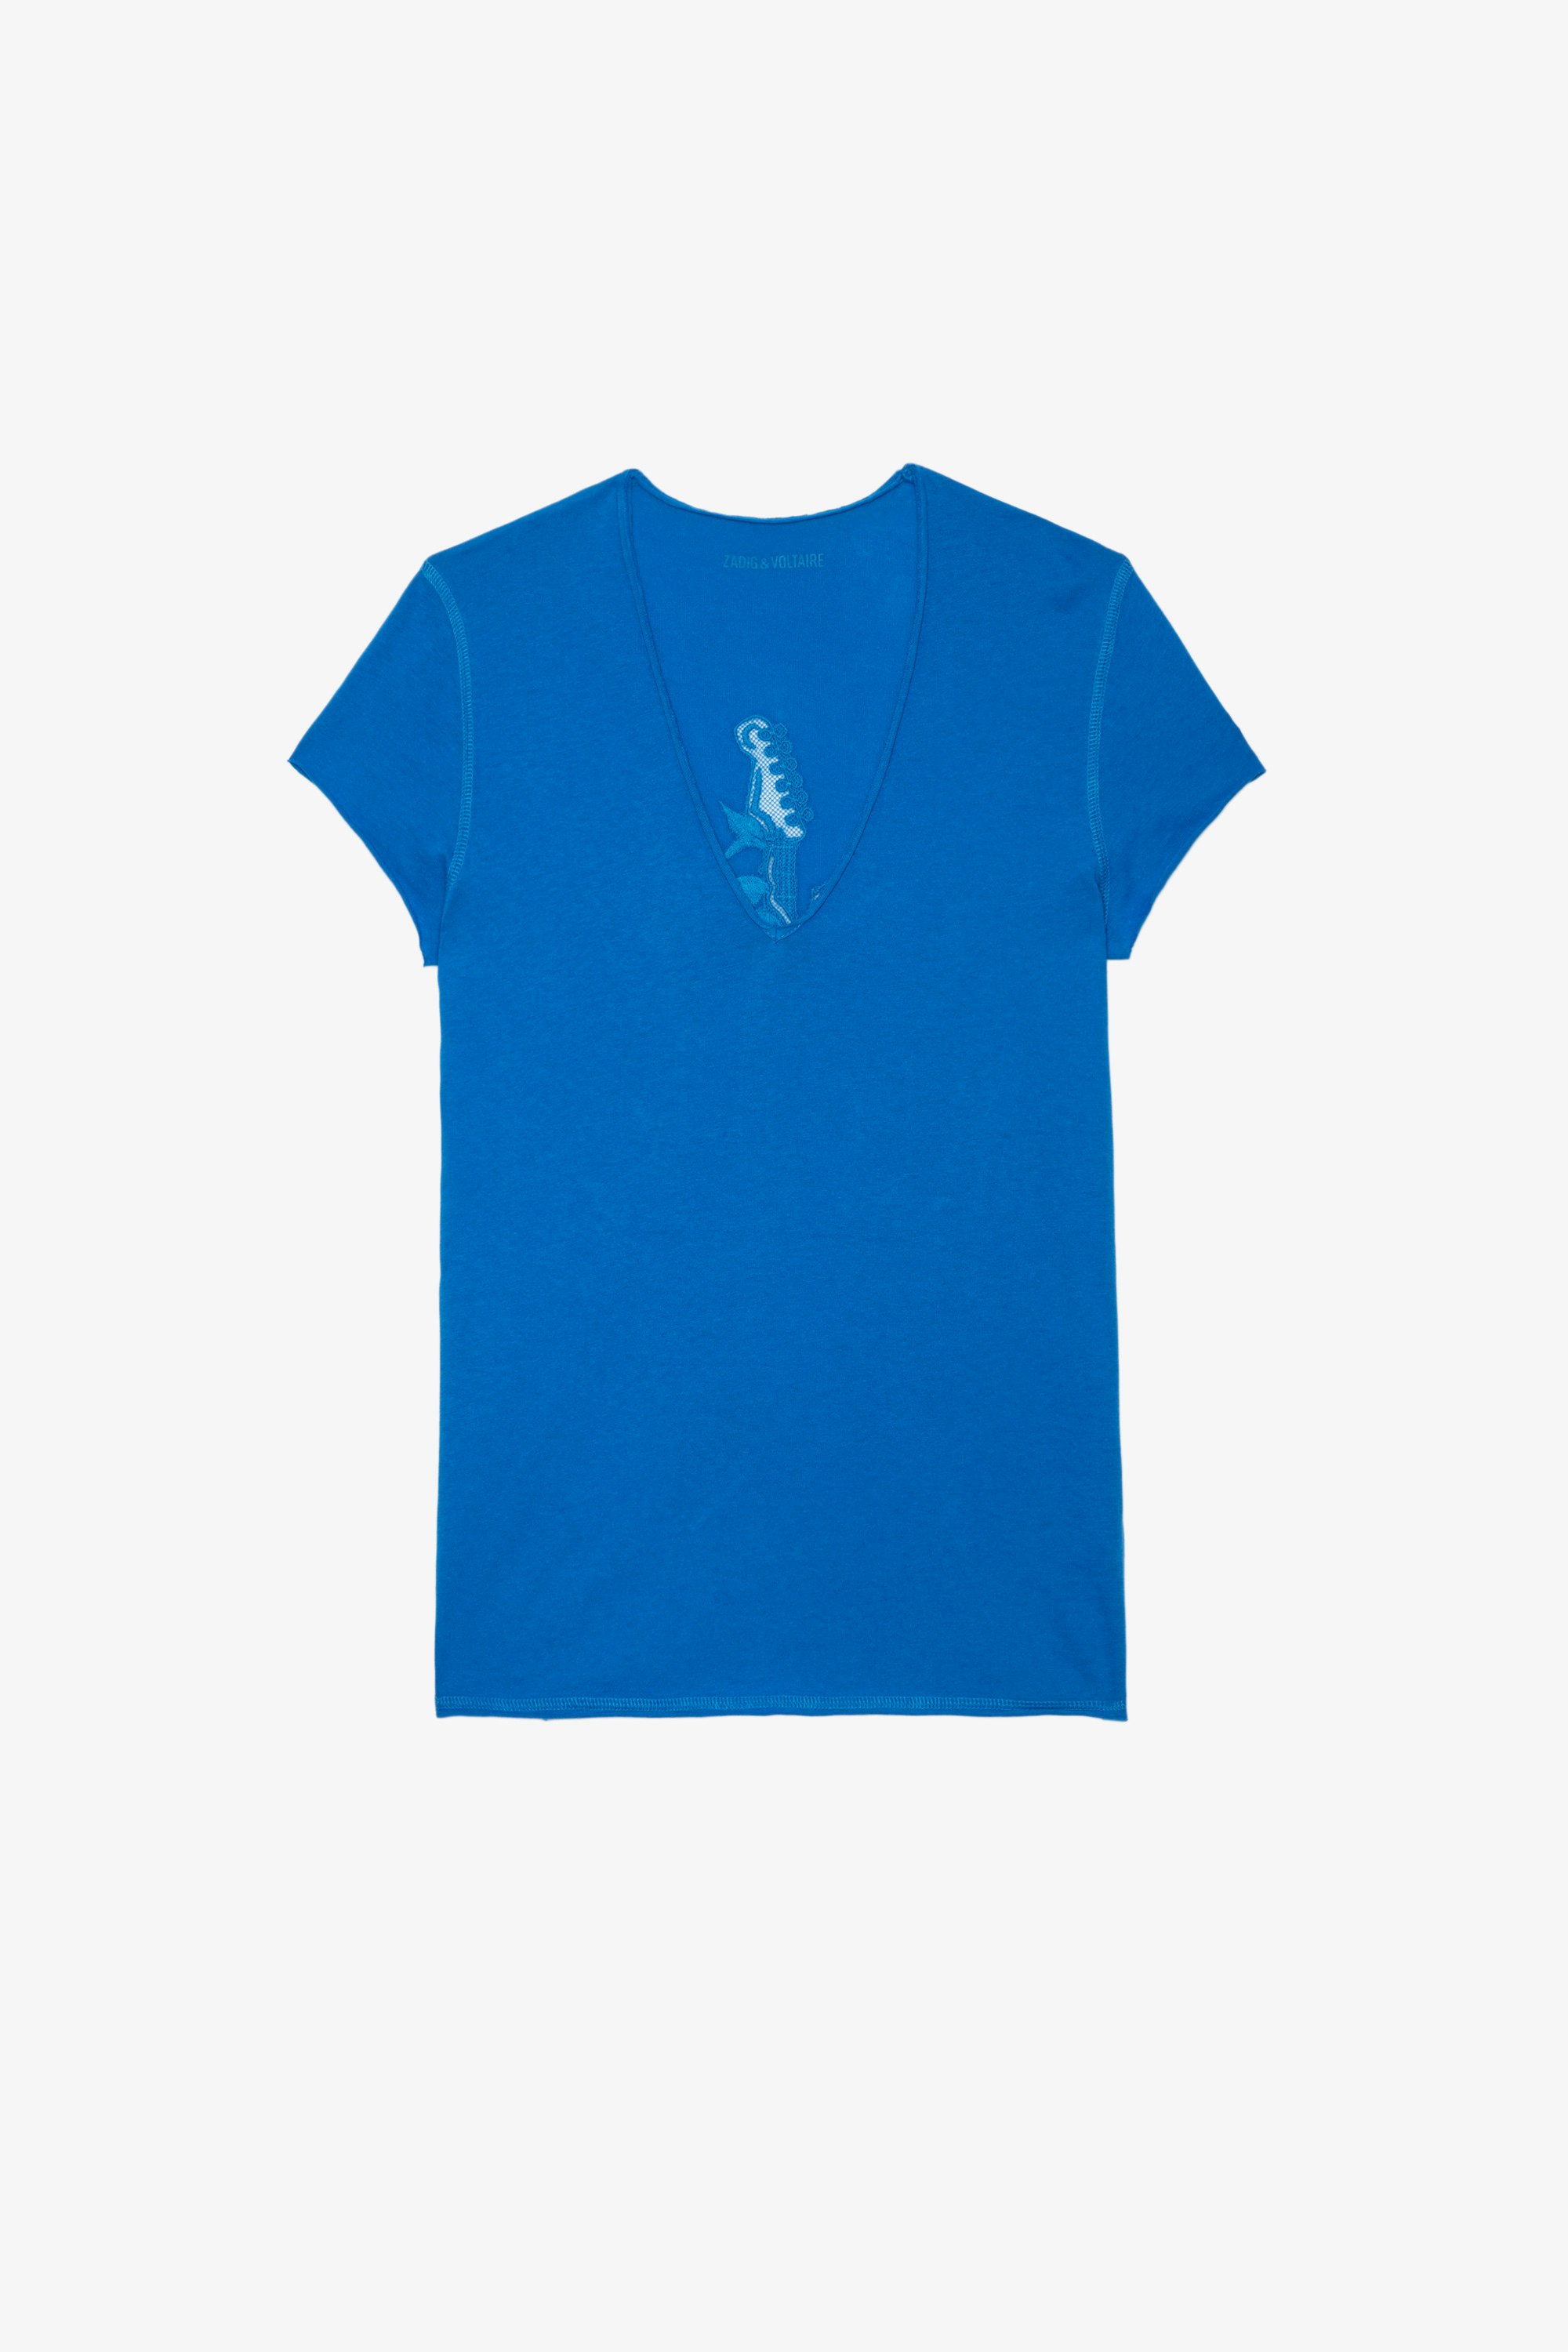 T-Shirt Story Fishnet Guitar Kurzarm-Damenshirt aus blauer Baumwolle mit V-Ausschnitt mit Gitarrenmotiv hinten